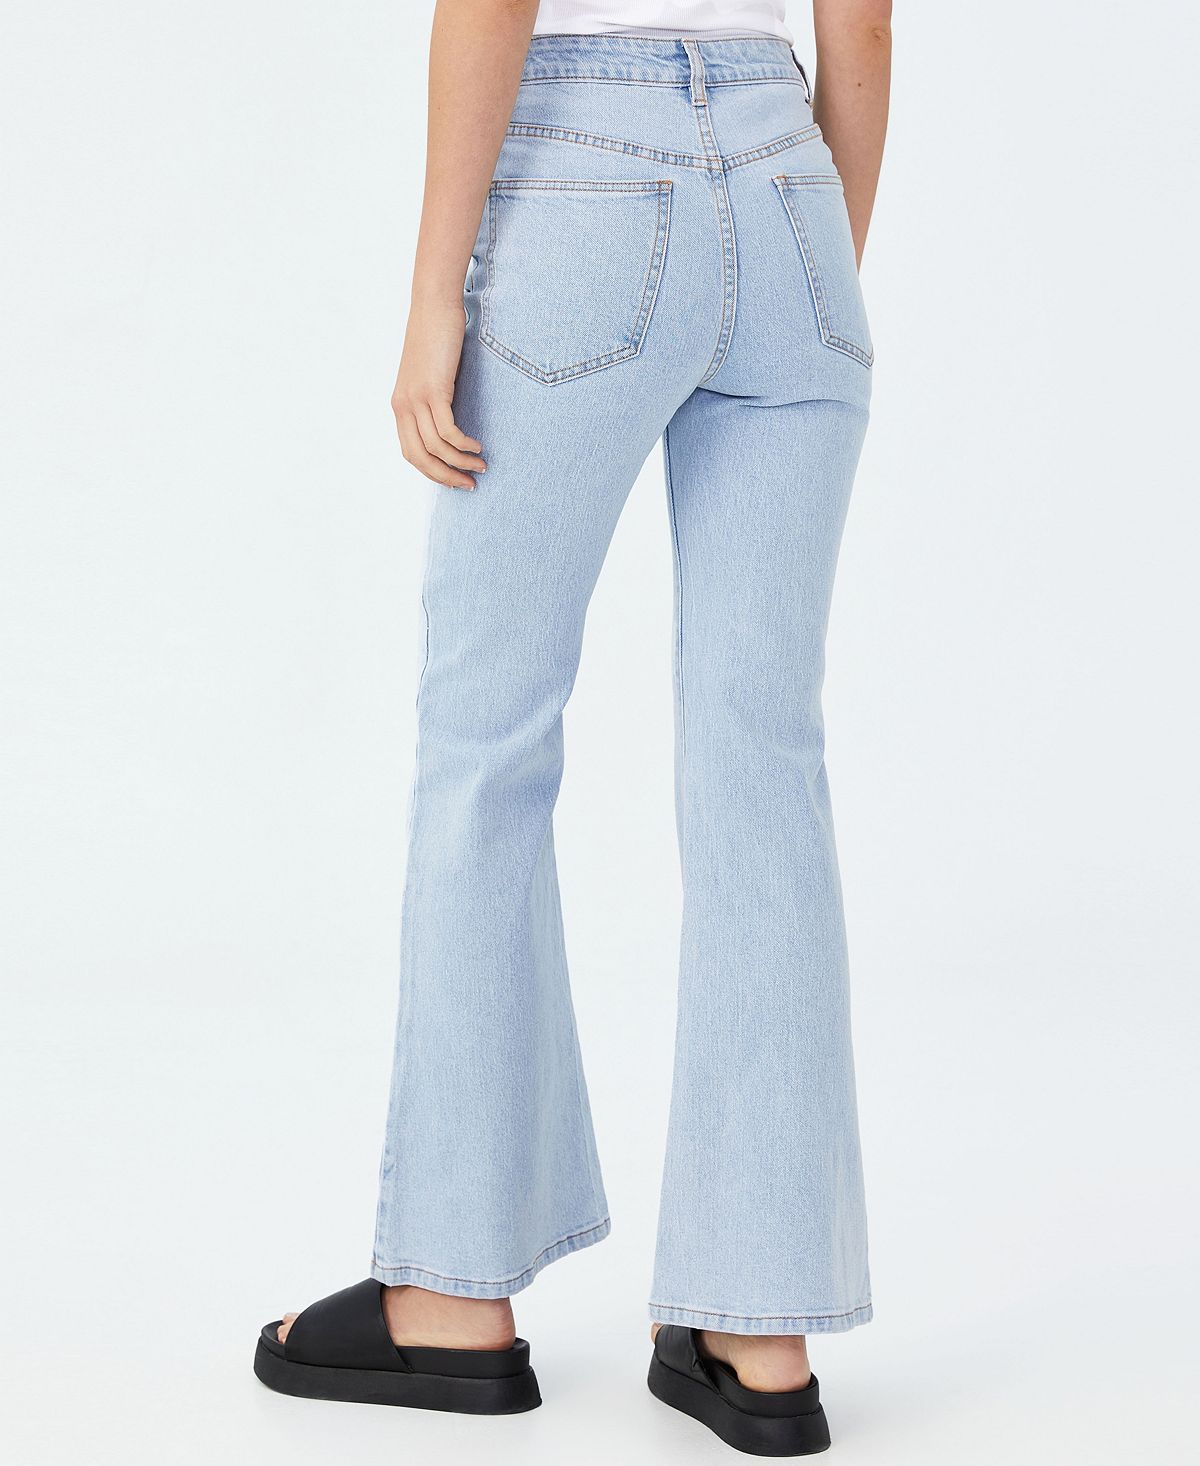 Джинсы хлопок. Хлопковые джинсы. Легинсы женские клешеные котон. F5 Jeans Cotton Club Brich 0953.